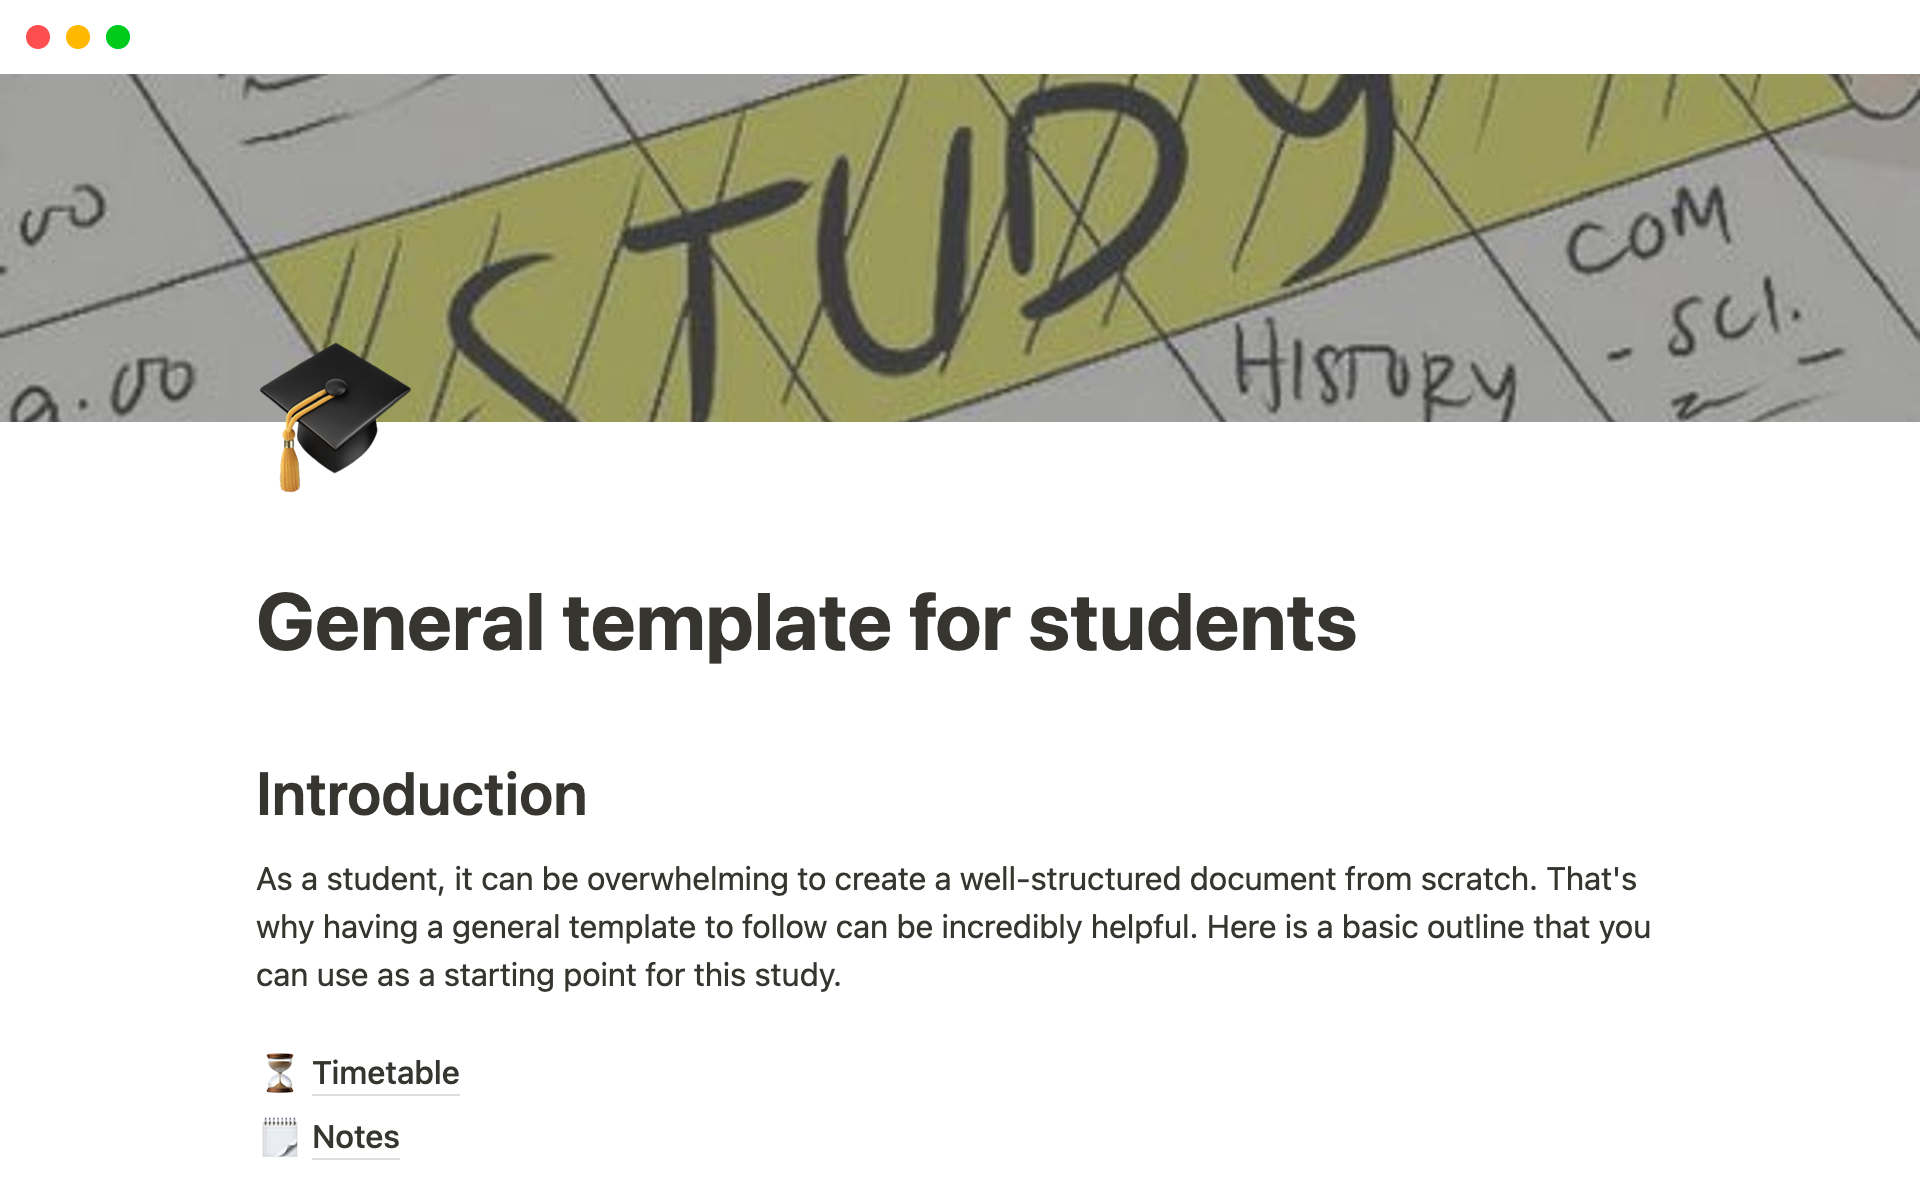 Uma prévia do modelo para General template for students